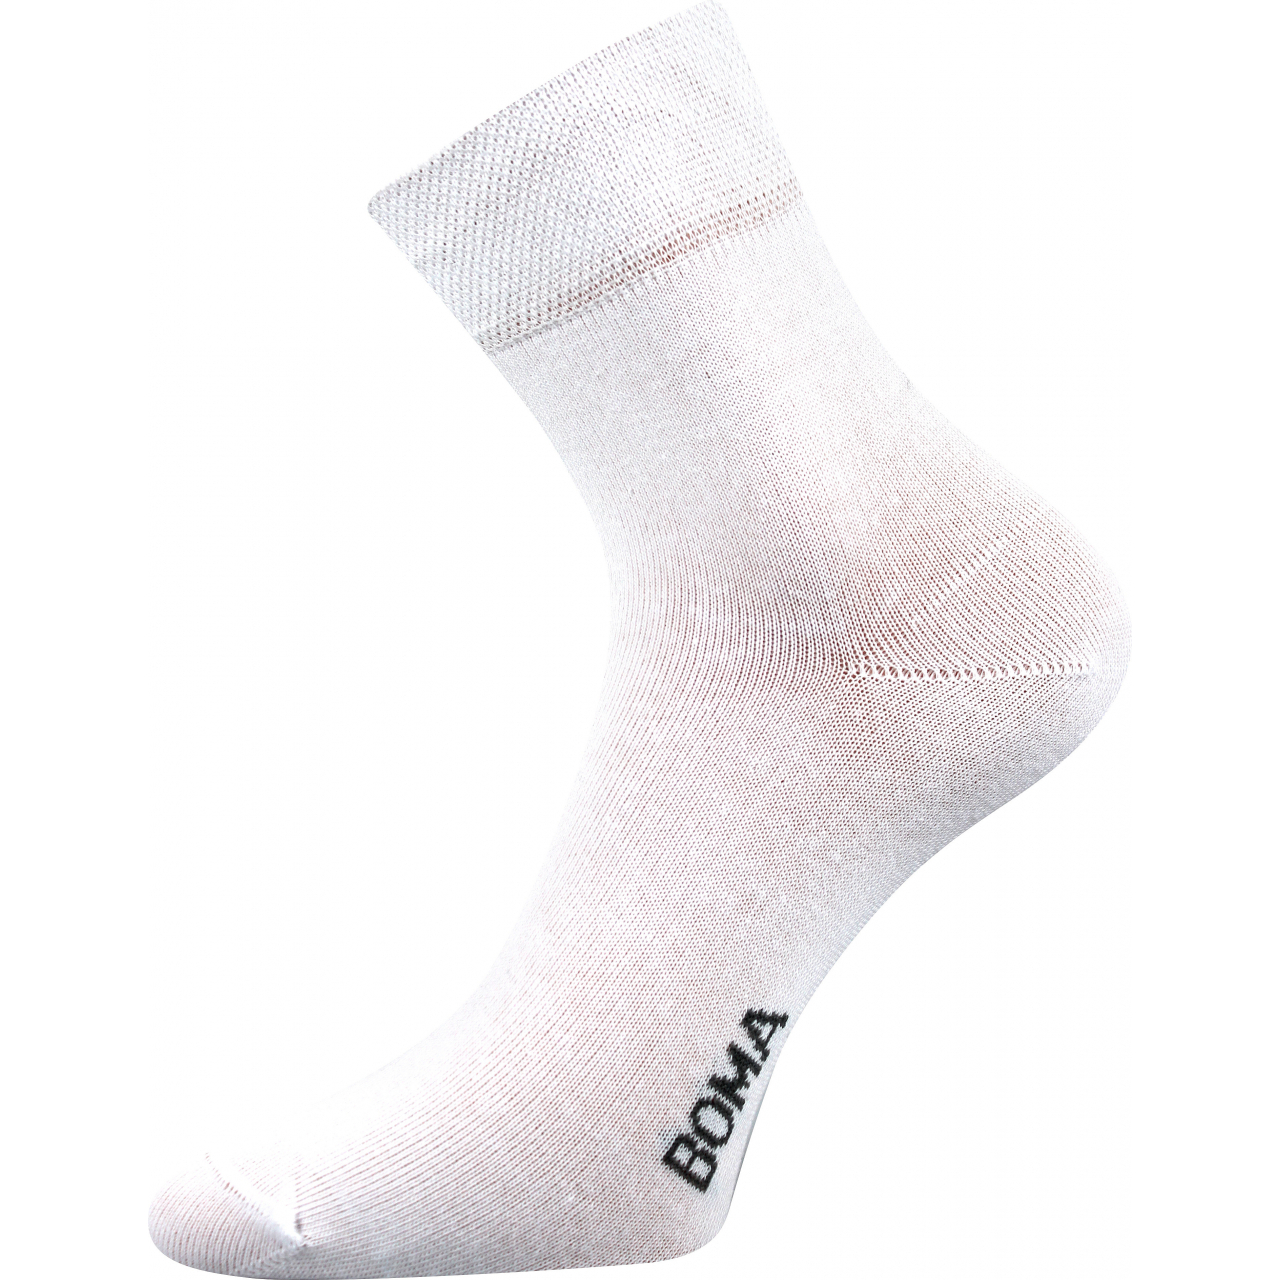 Ponožky unisex klasické Boma Zazr - bílé, 39-42